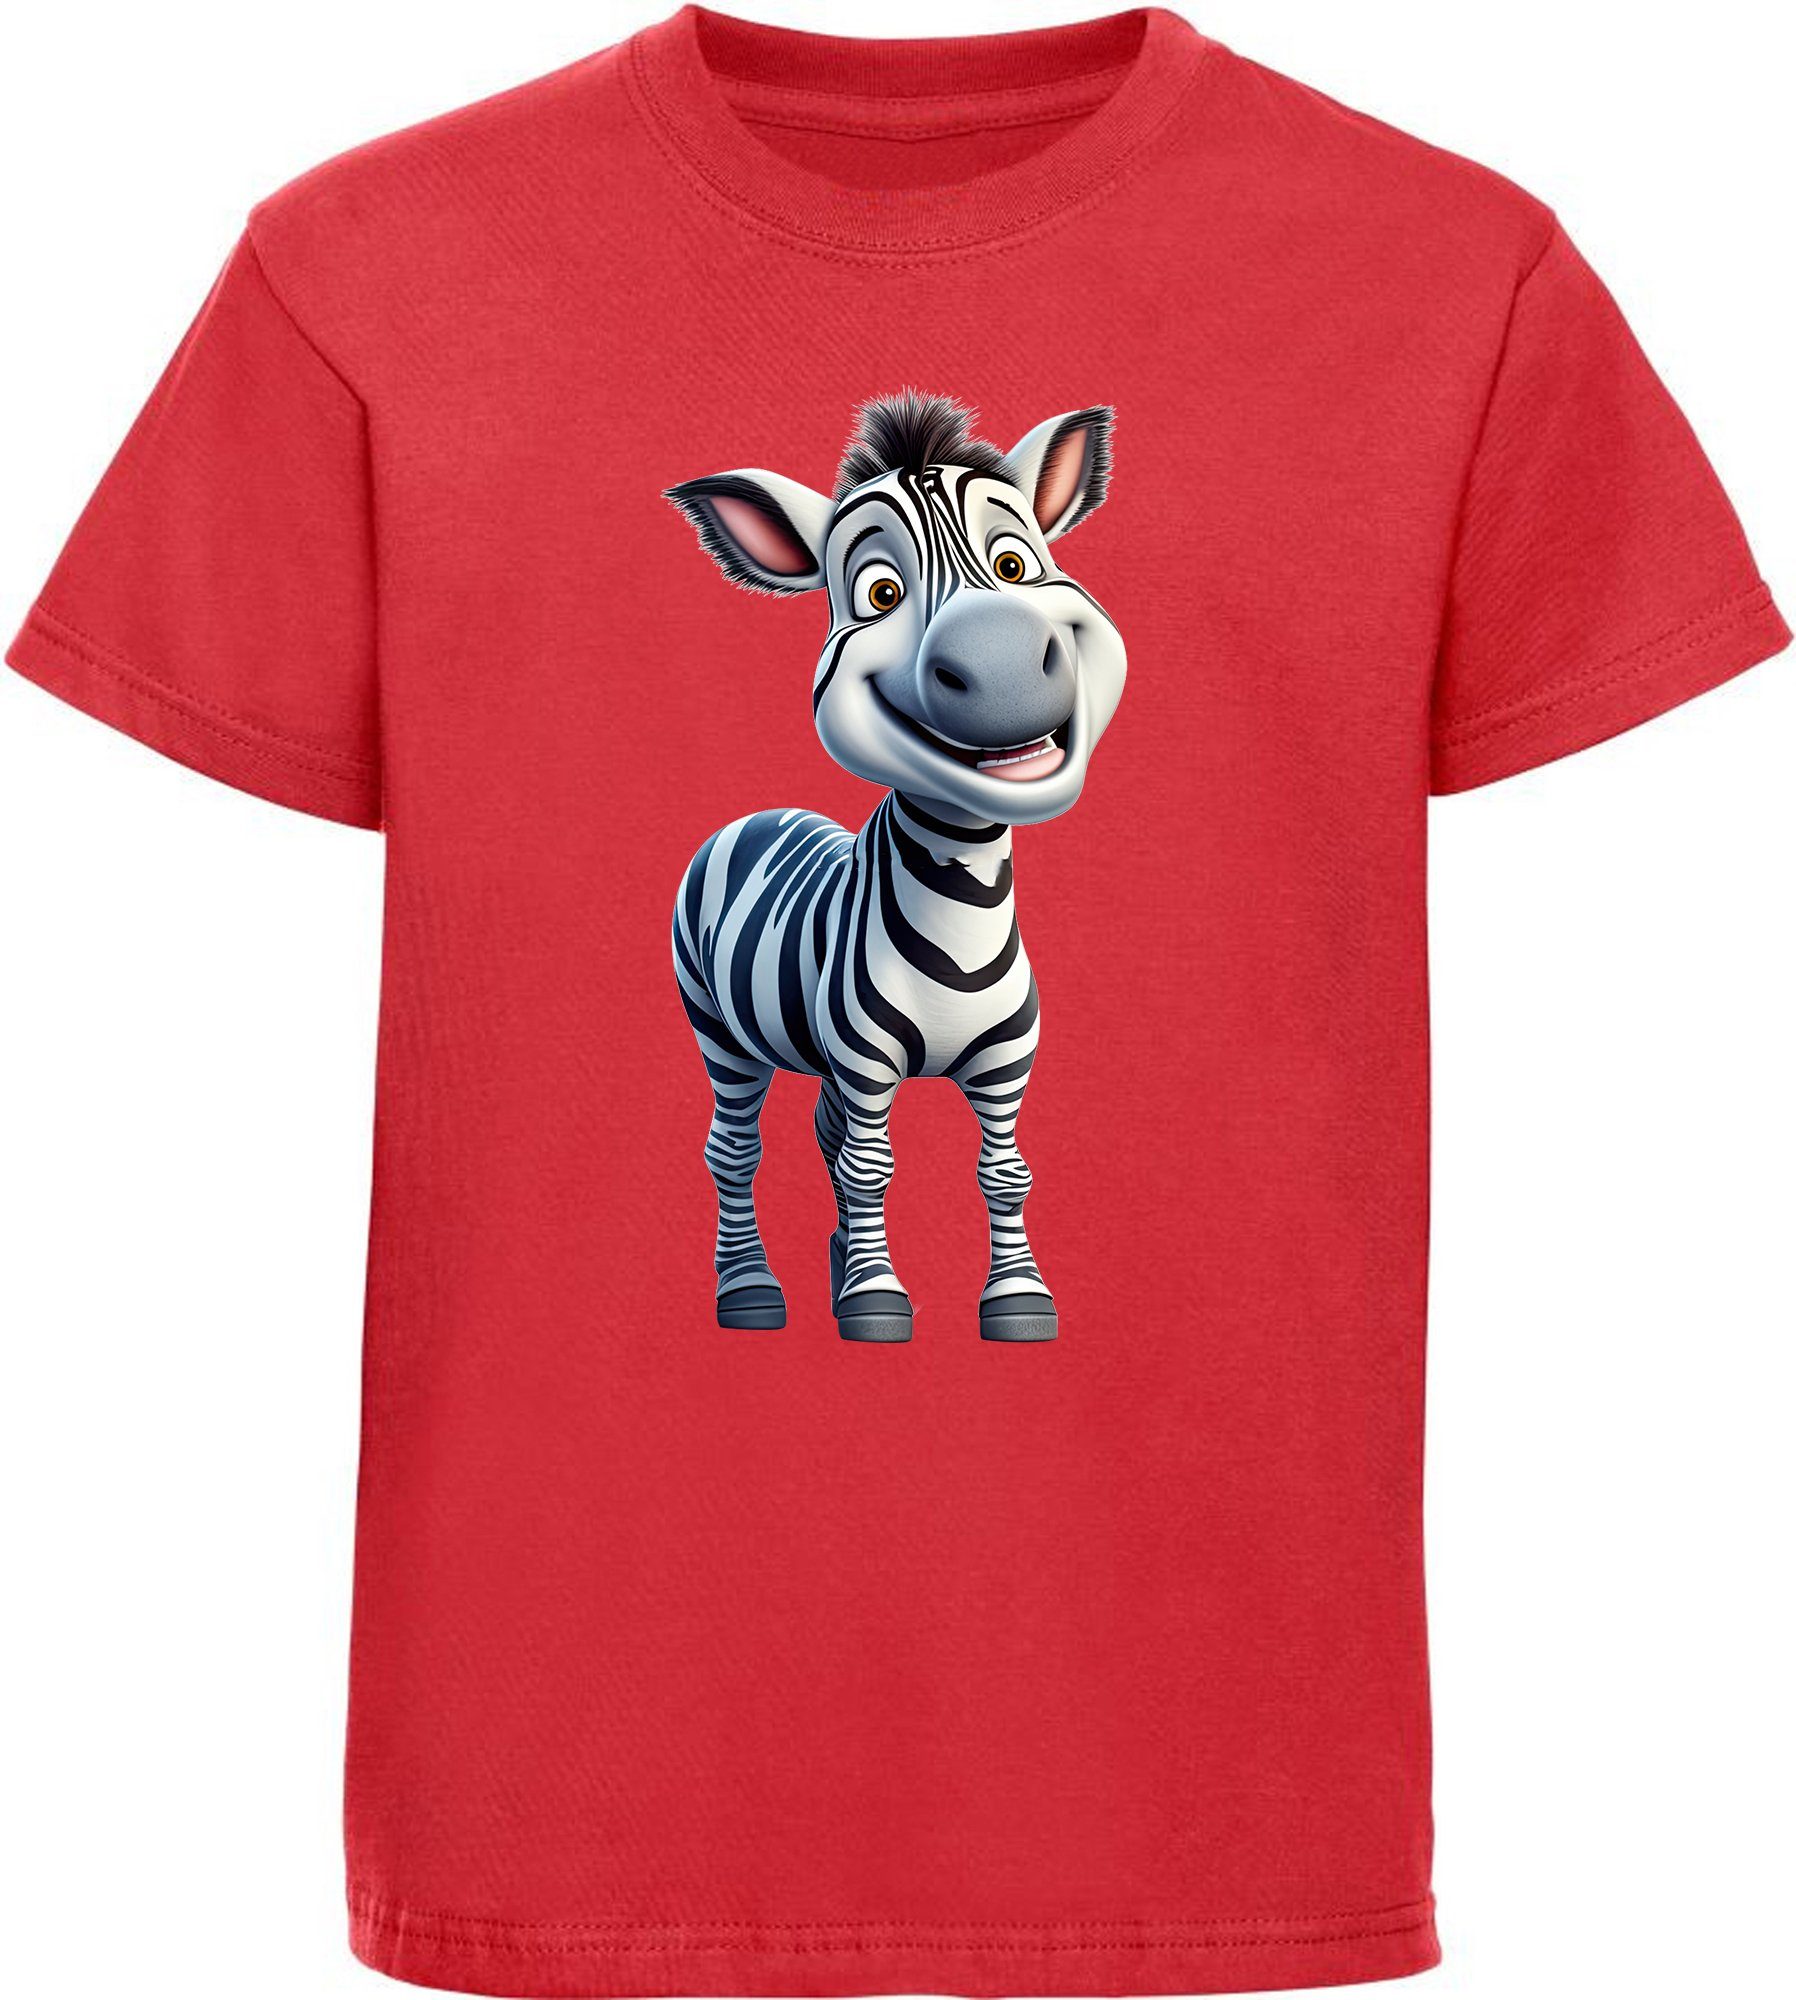 MyDesign24 T-Shirt Kinder Wildtier Print Shirt bedruckt - Baby Zebra Baumwollshirt mit Aufdruck, i280 rot